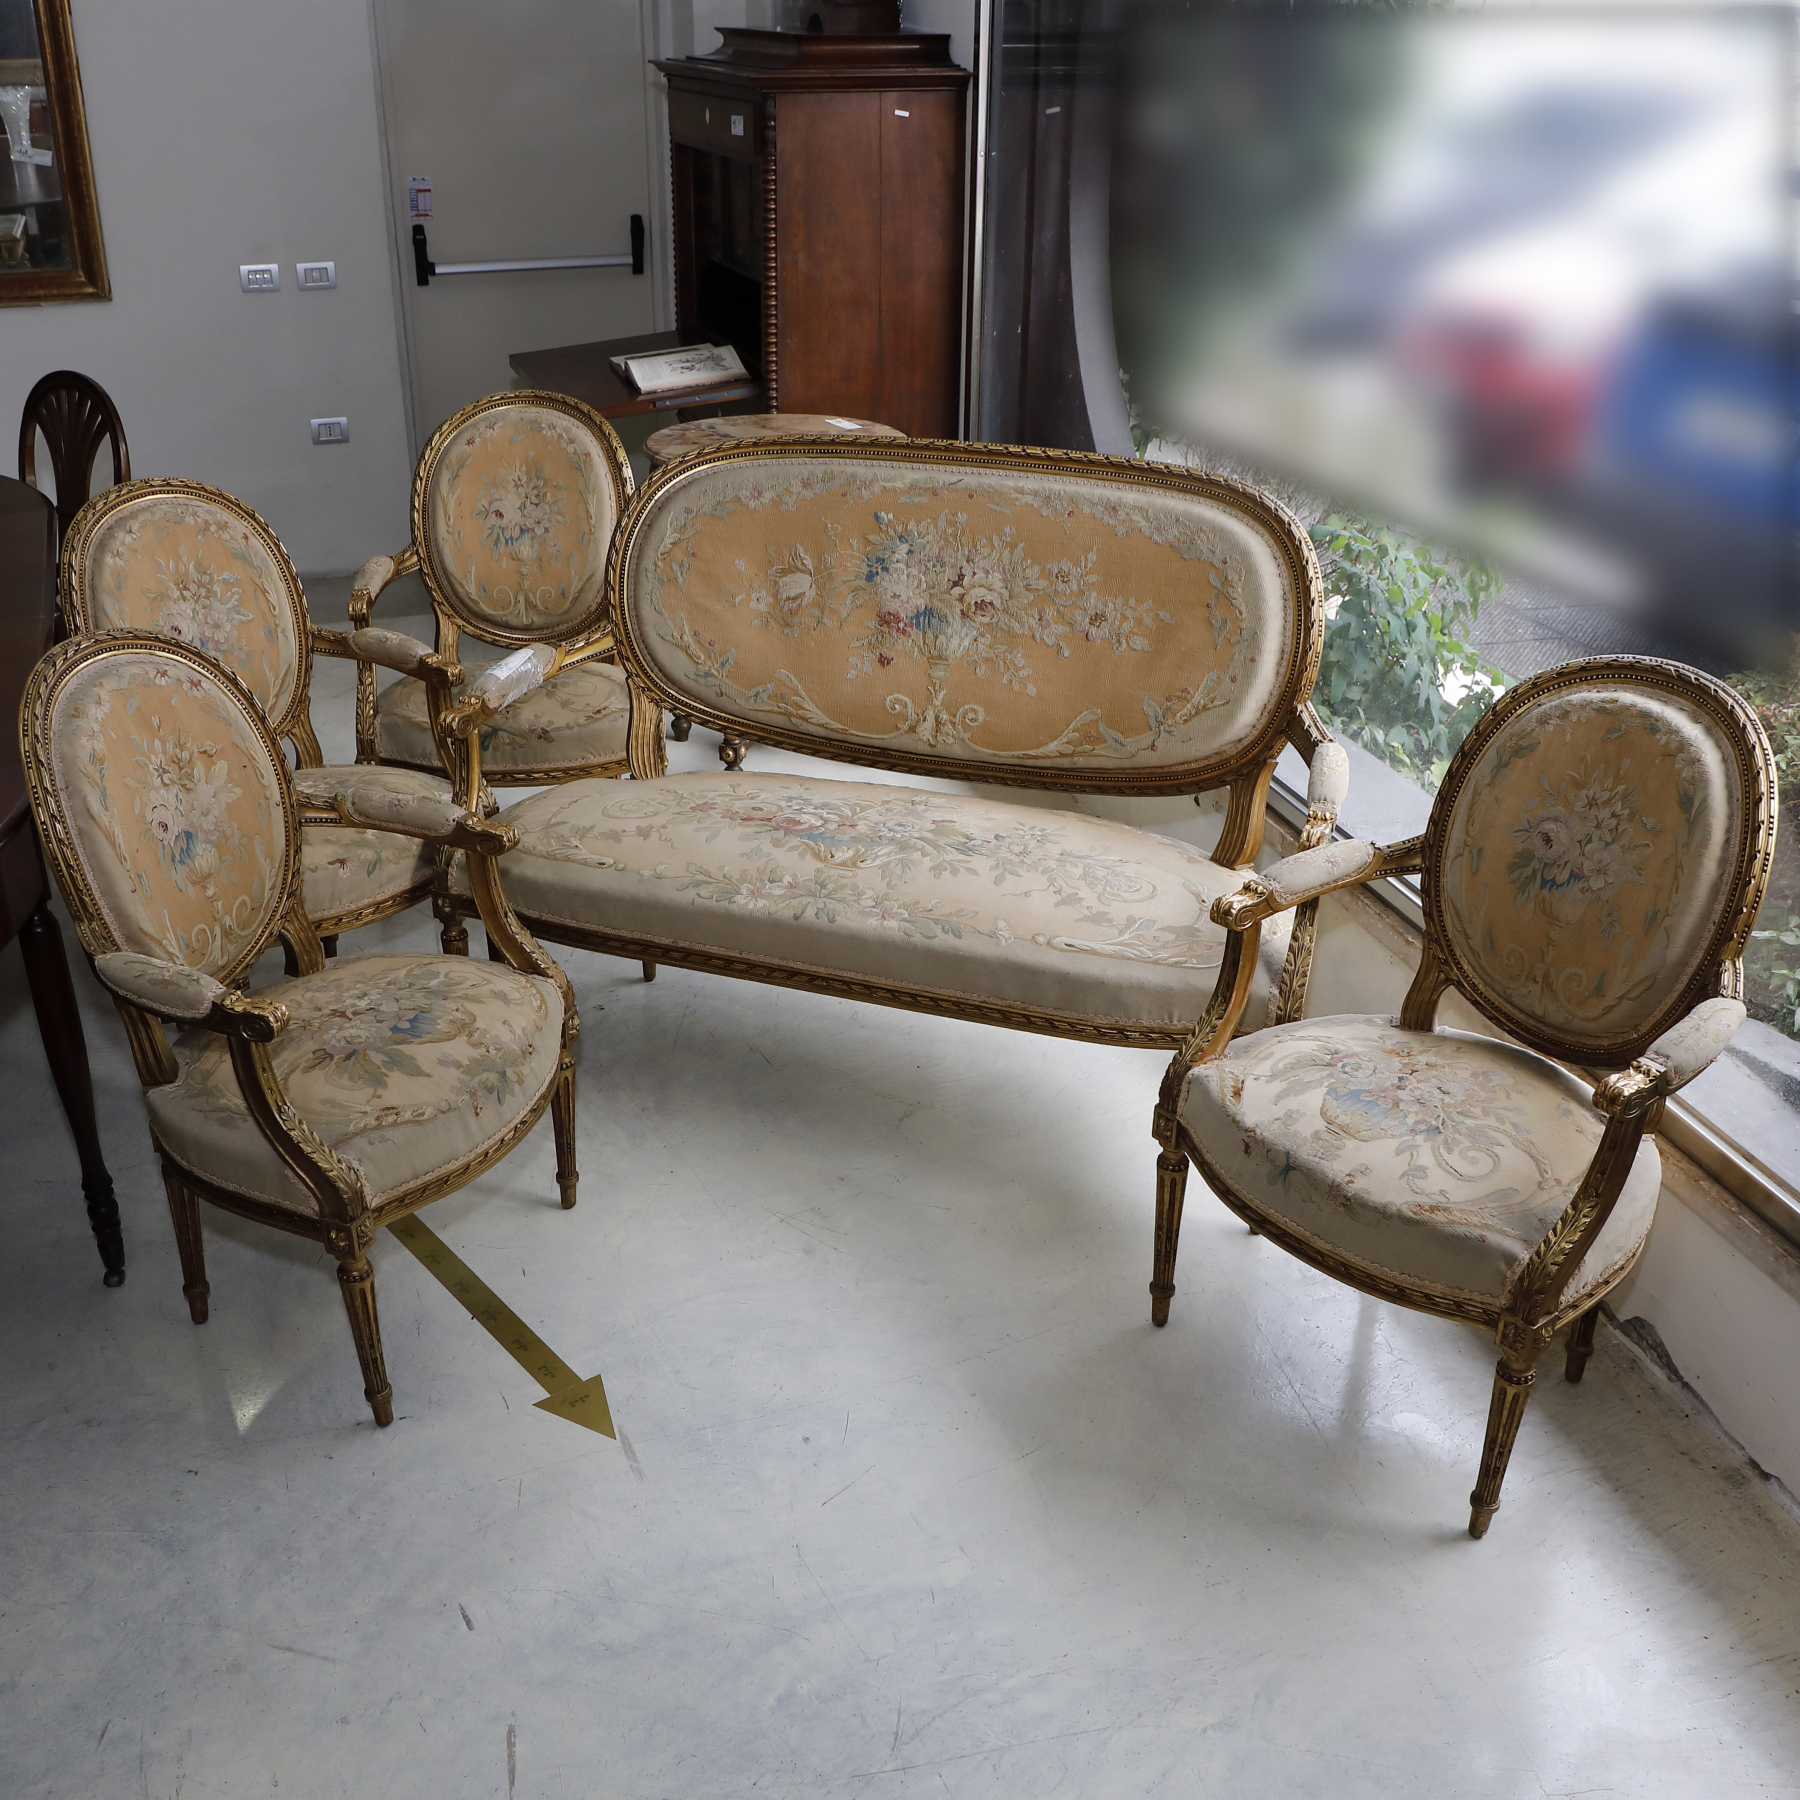 Coppia sedie in noce intarsiate a motivi floreali Origine Olandese Epoca 700 - Sedie e Poltrone